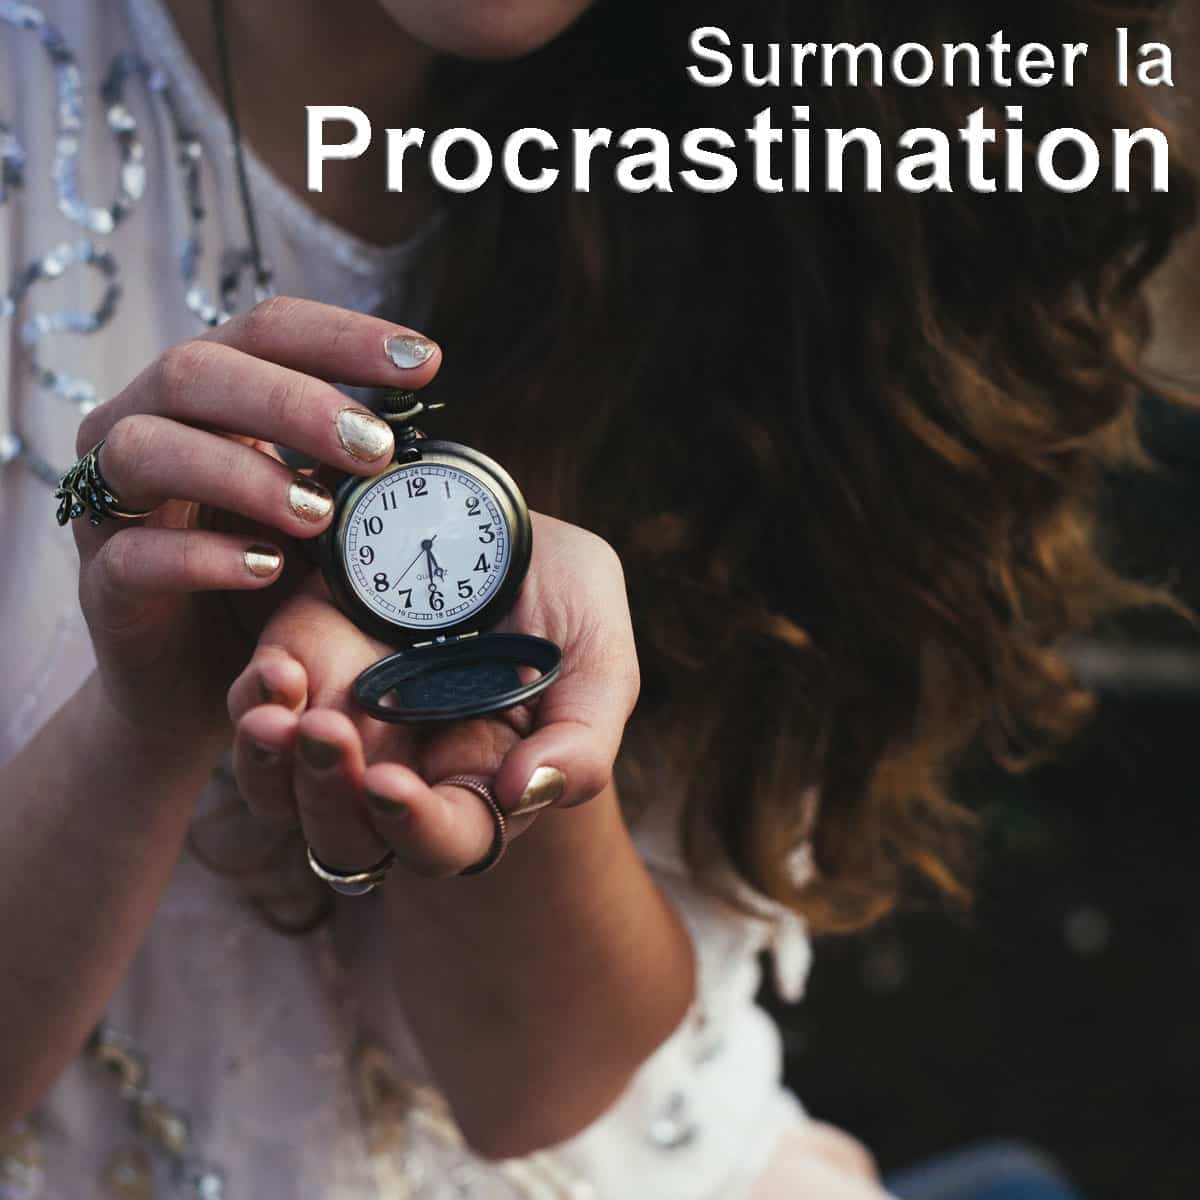 Surmonter la procrastination vaincre la procrastination, lutter contre la procrastination, combattre la procrastination, comment vaincre la procrastination,surmonter la procrastination